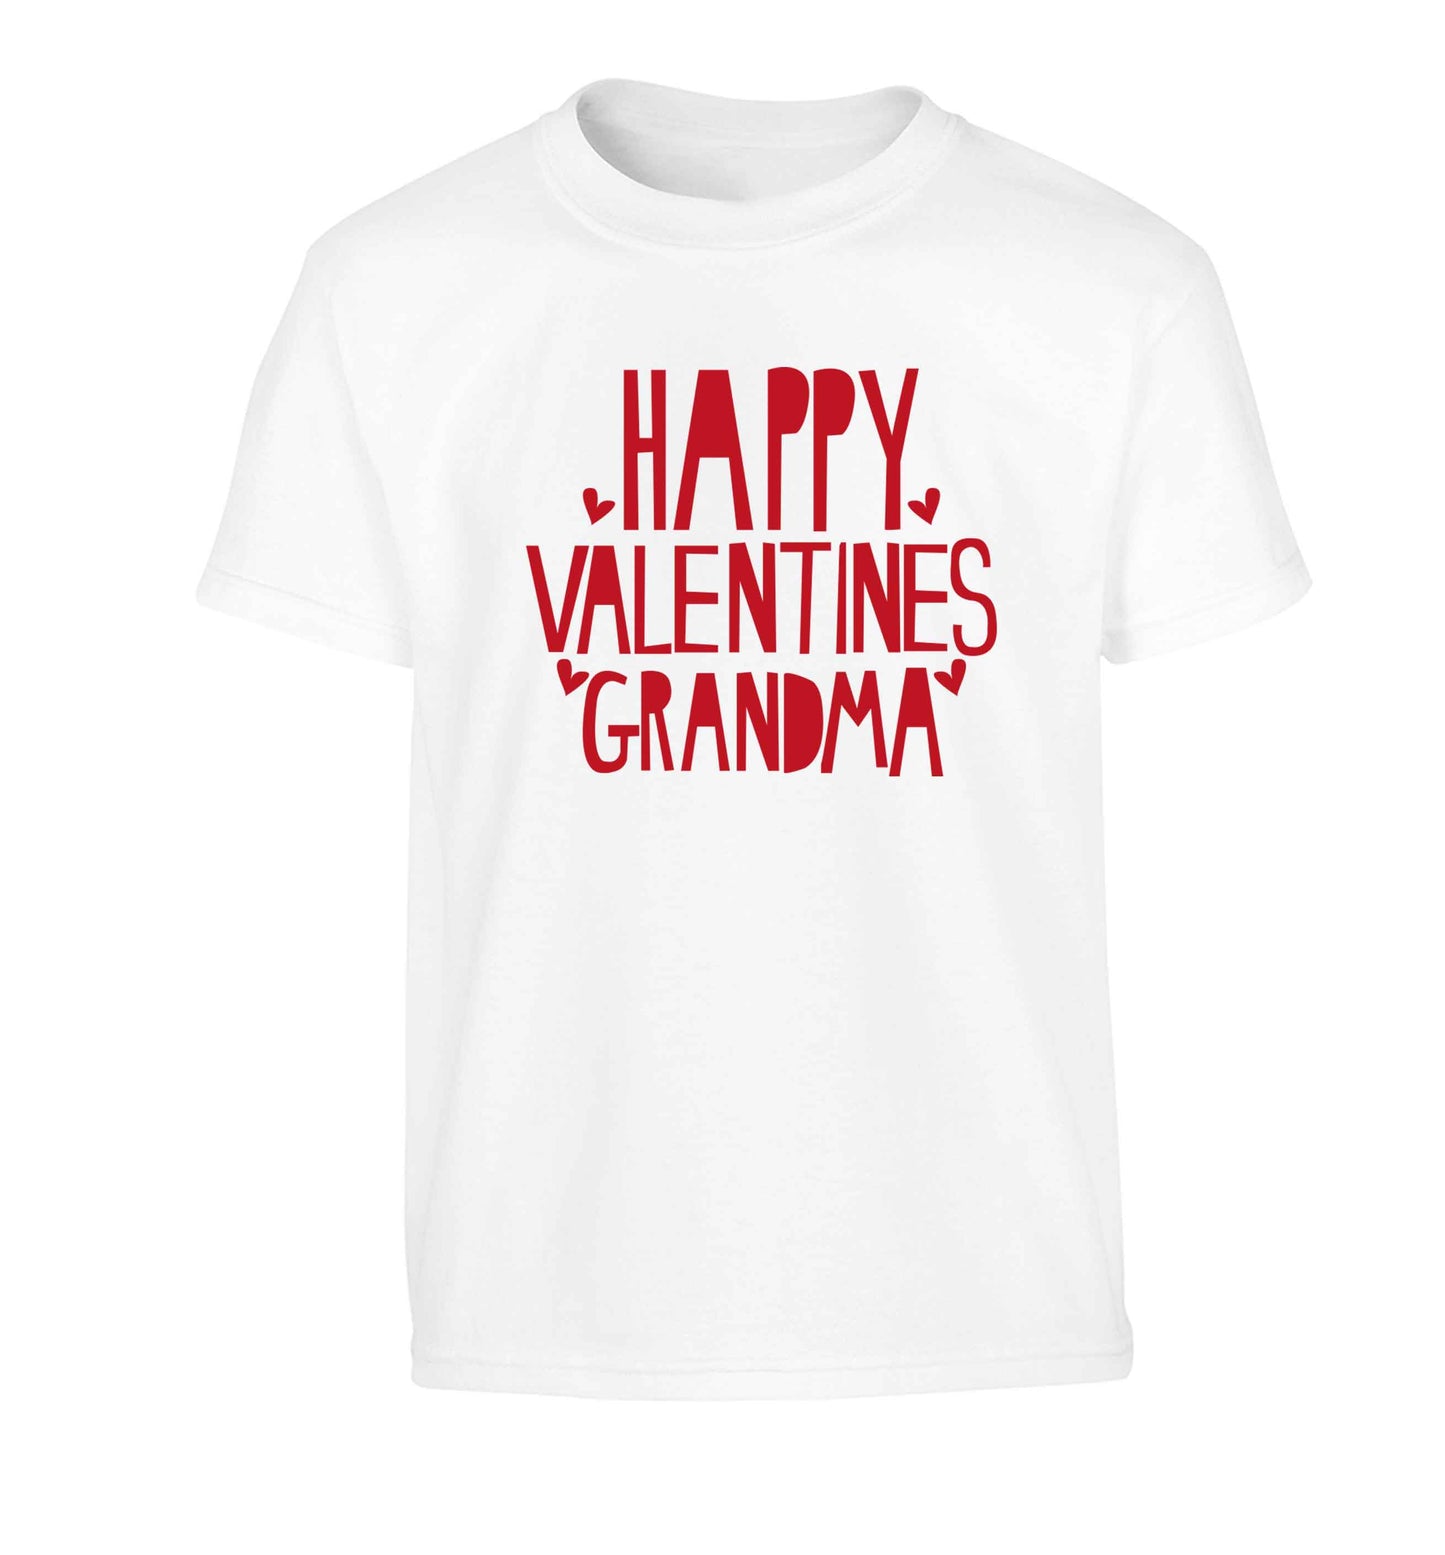 Happy valentines grandma Children's white Tshirt 12-13 Years